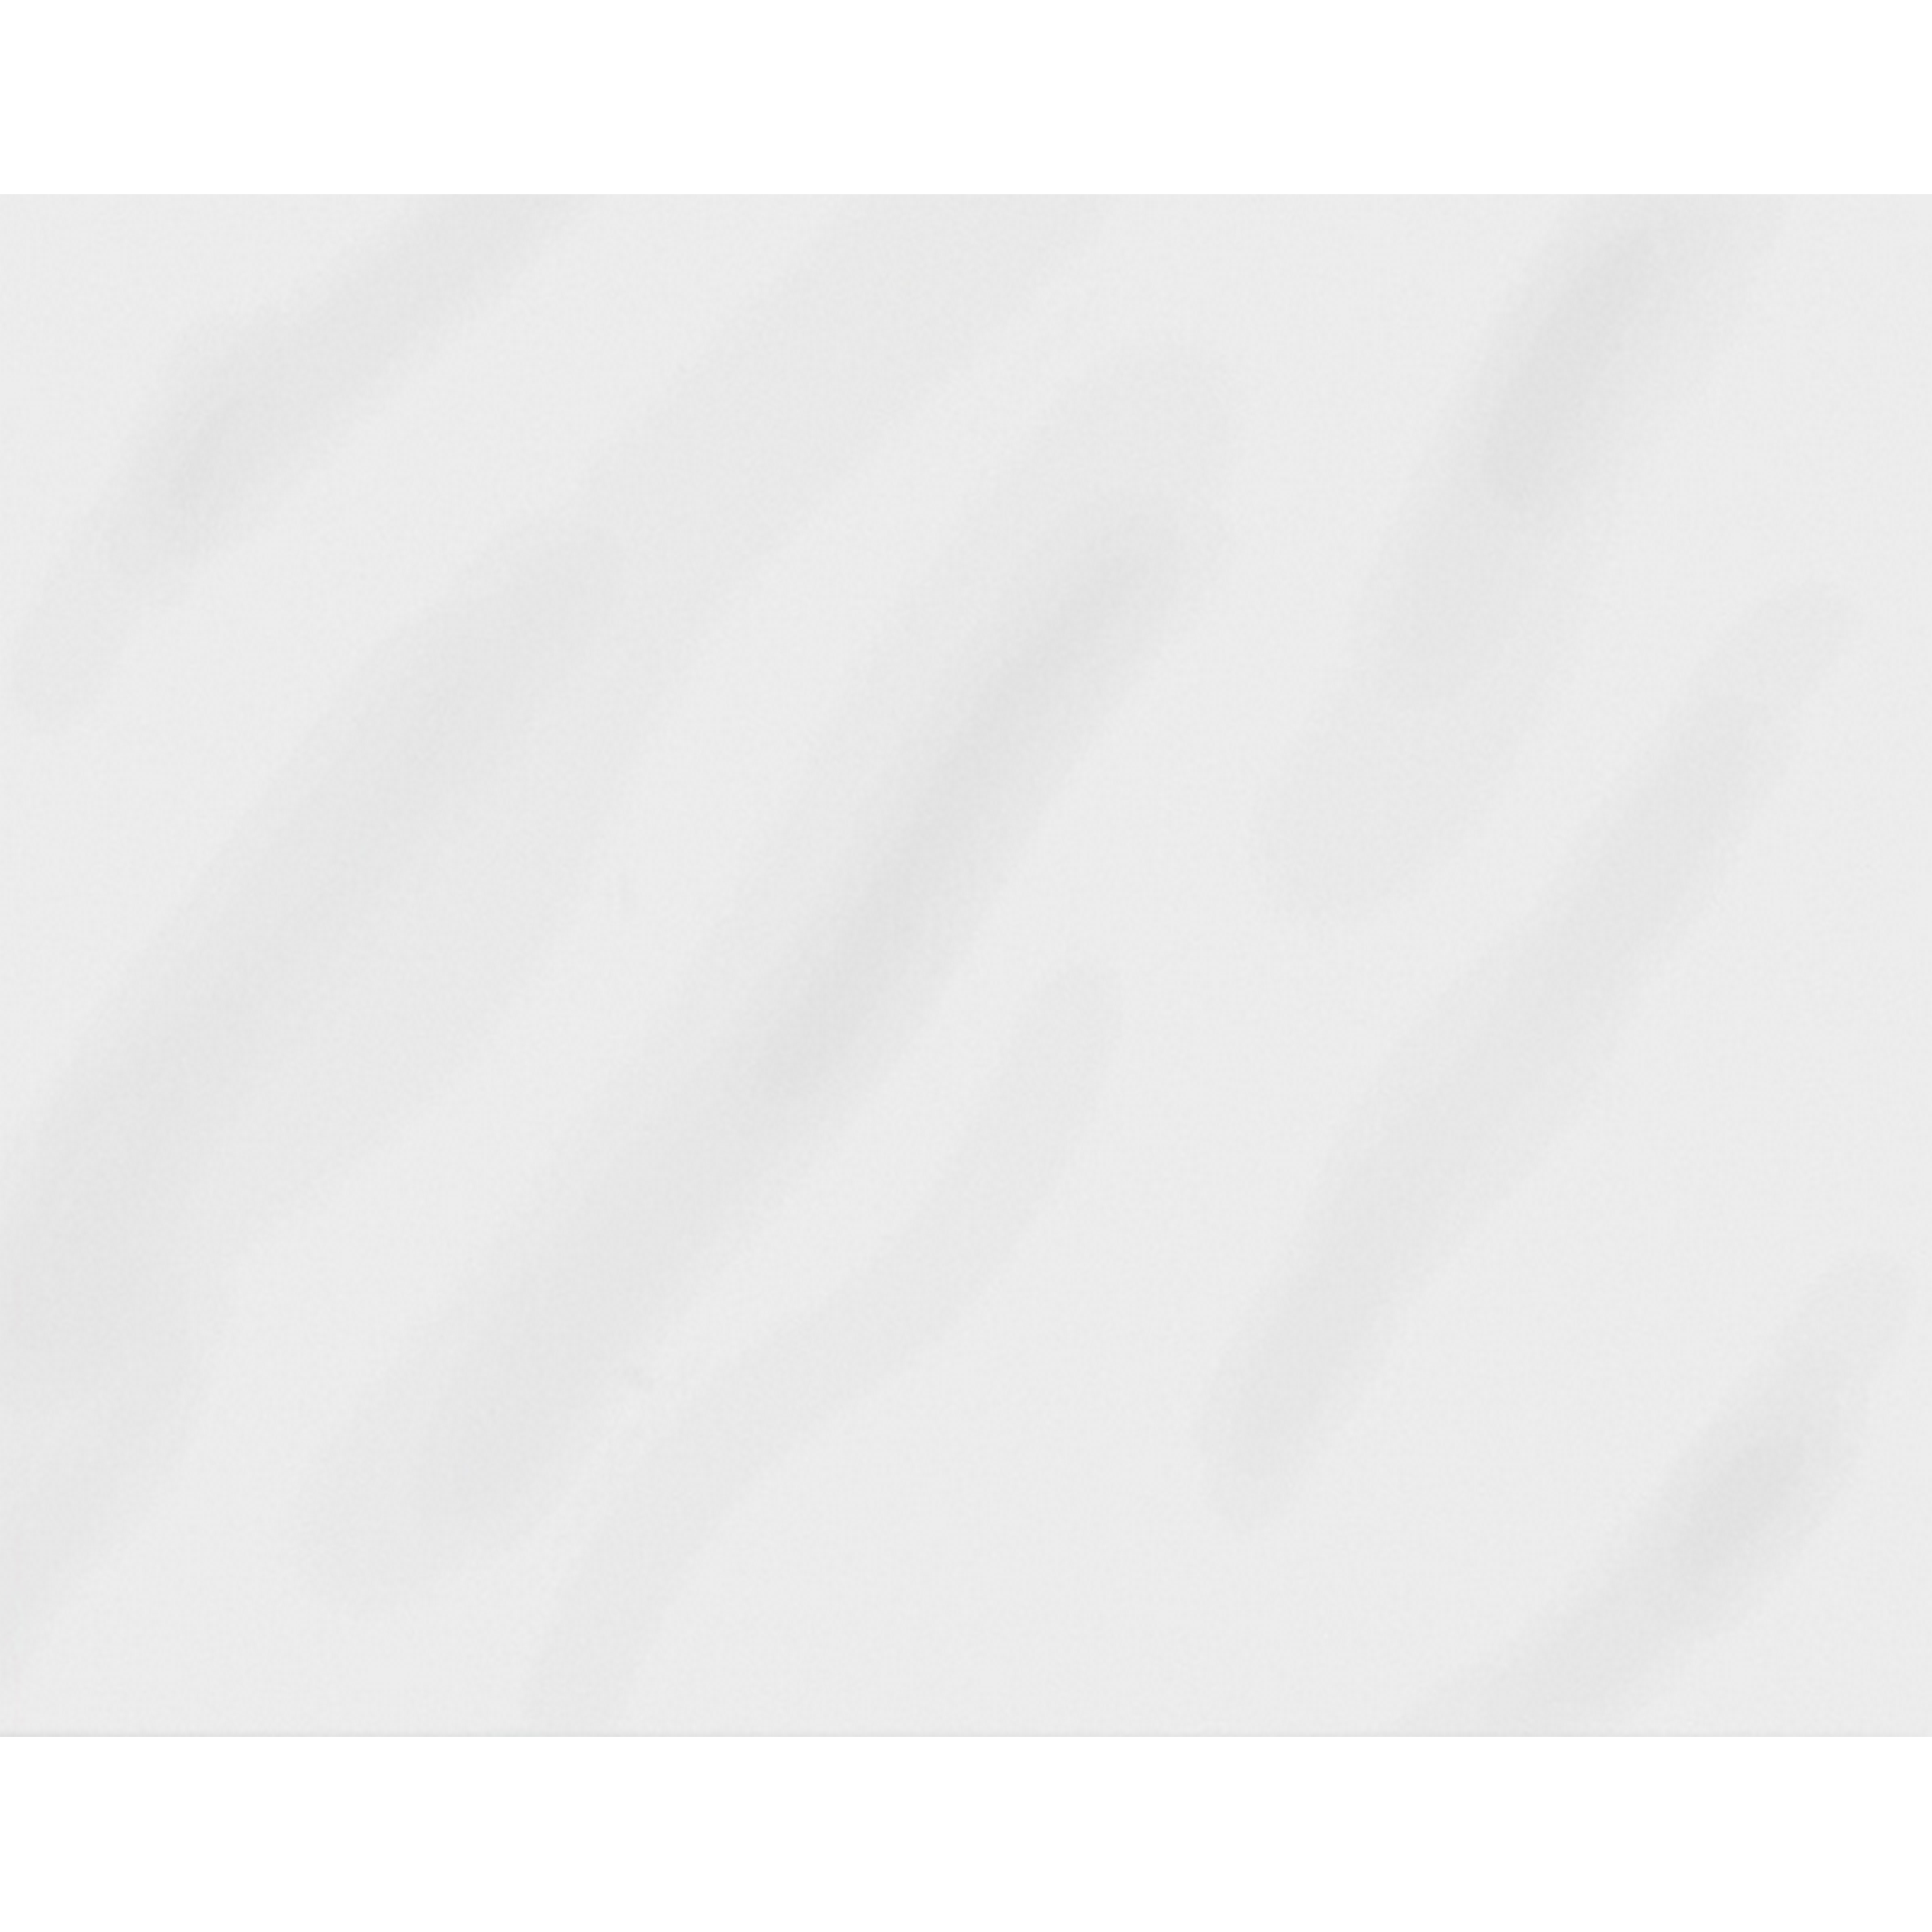 Wandfliese 'Ice' Steingut weiß glänzend 20 x 25 cm + product picture